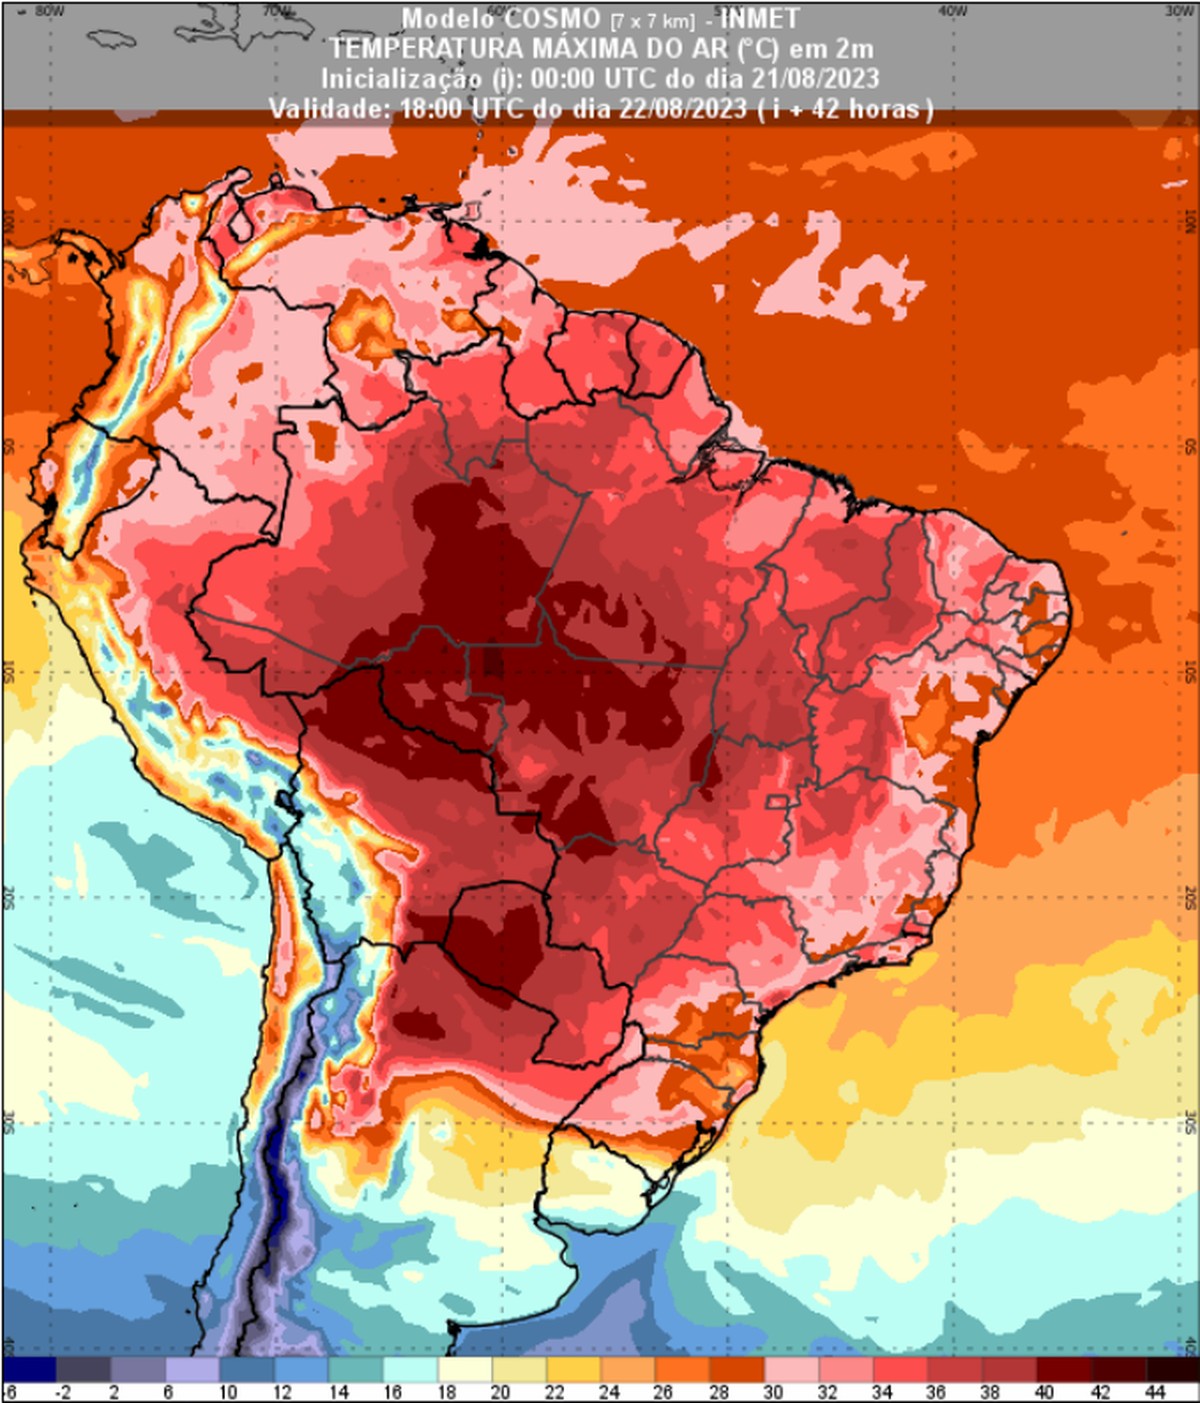 Brasil enfrenta onda de calor e pode ter recordes de temperatura